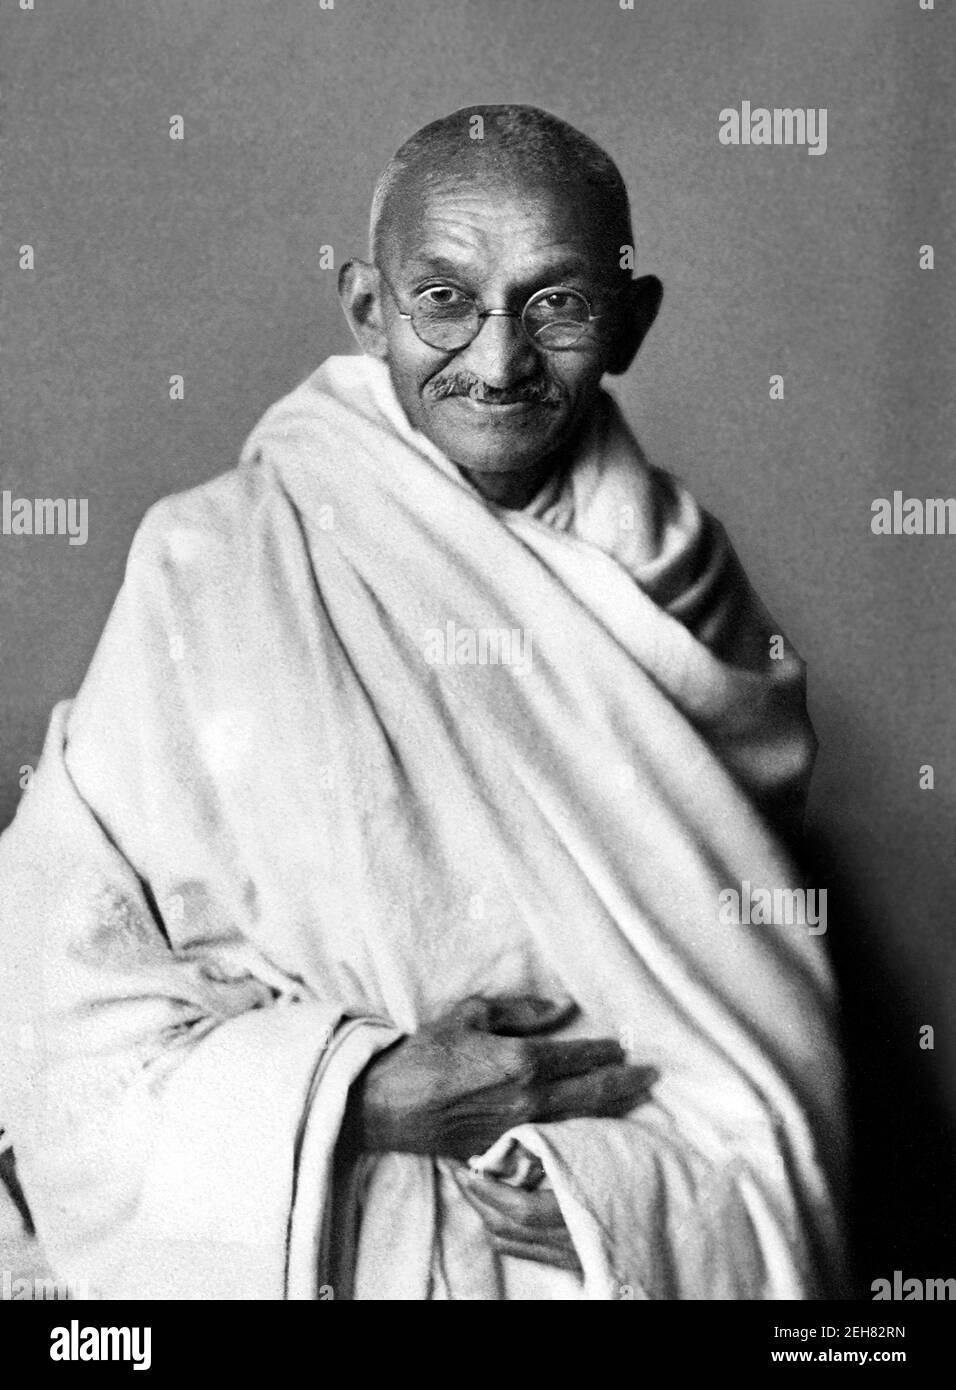 Mahatma Gandhi. Retrato de Mohandas Karamchand Gandhi (1869-1948), ampliamente conocido como Mahatma Gandhi. Foto tomada en 1931 Foto de stock